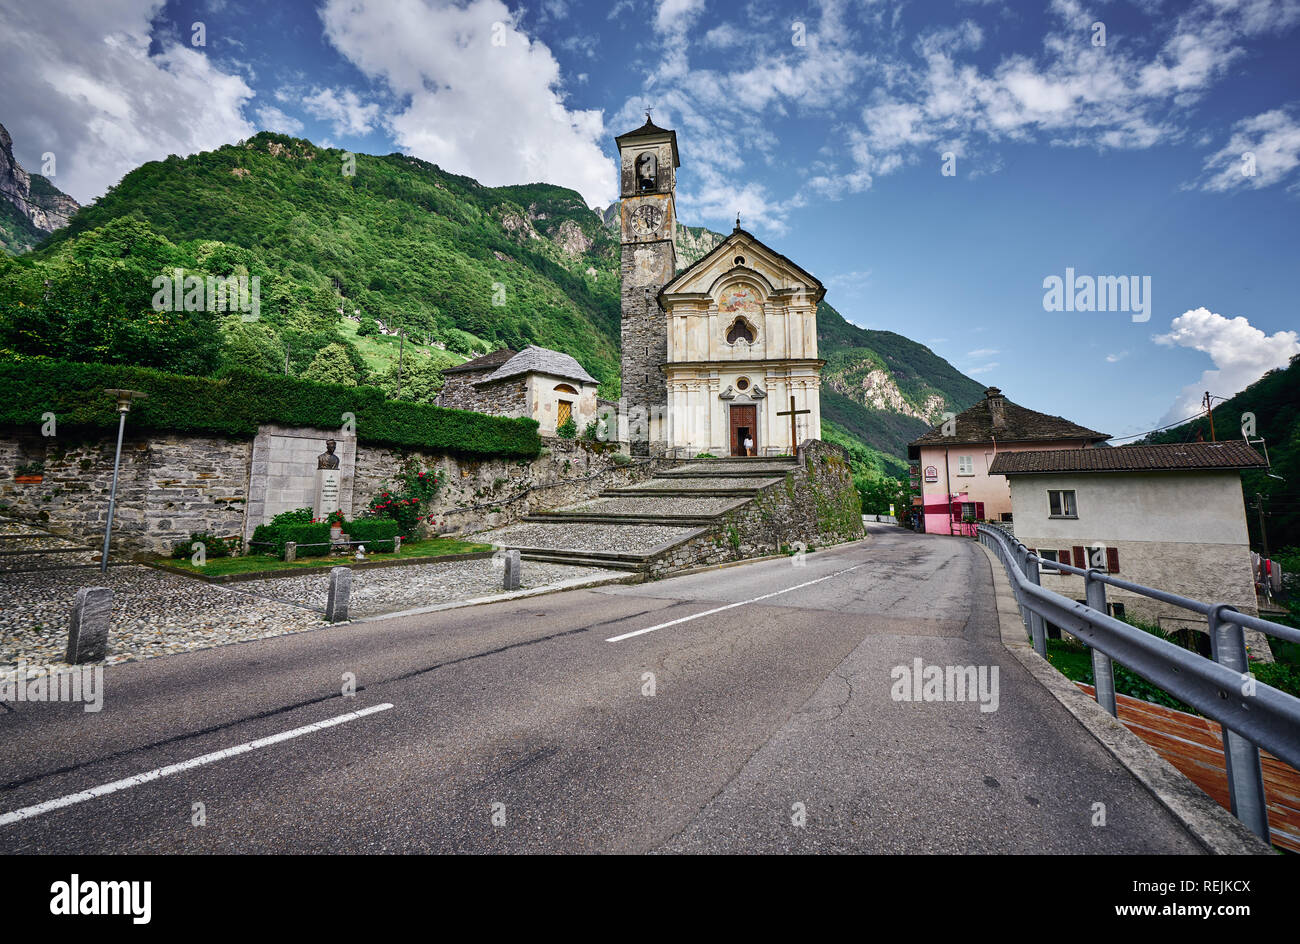 Panorama du village romantique de Lavertzzo, Verzasca Valley, Tessin, Suisse. Église, rivière, arbres verts et ciel bleu en juin, en été. Banque D'Images